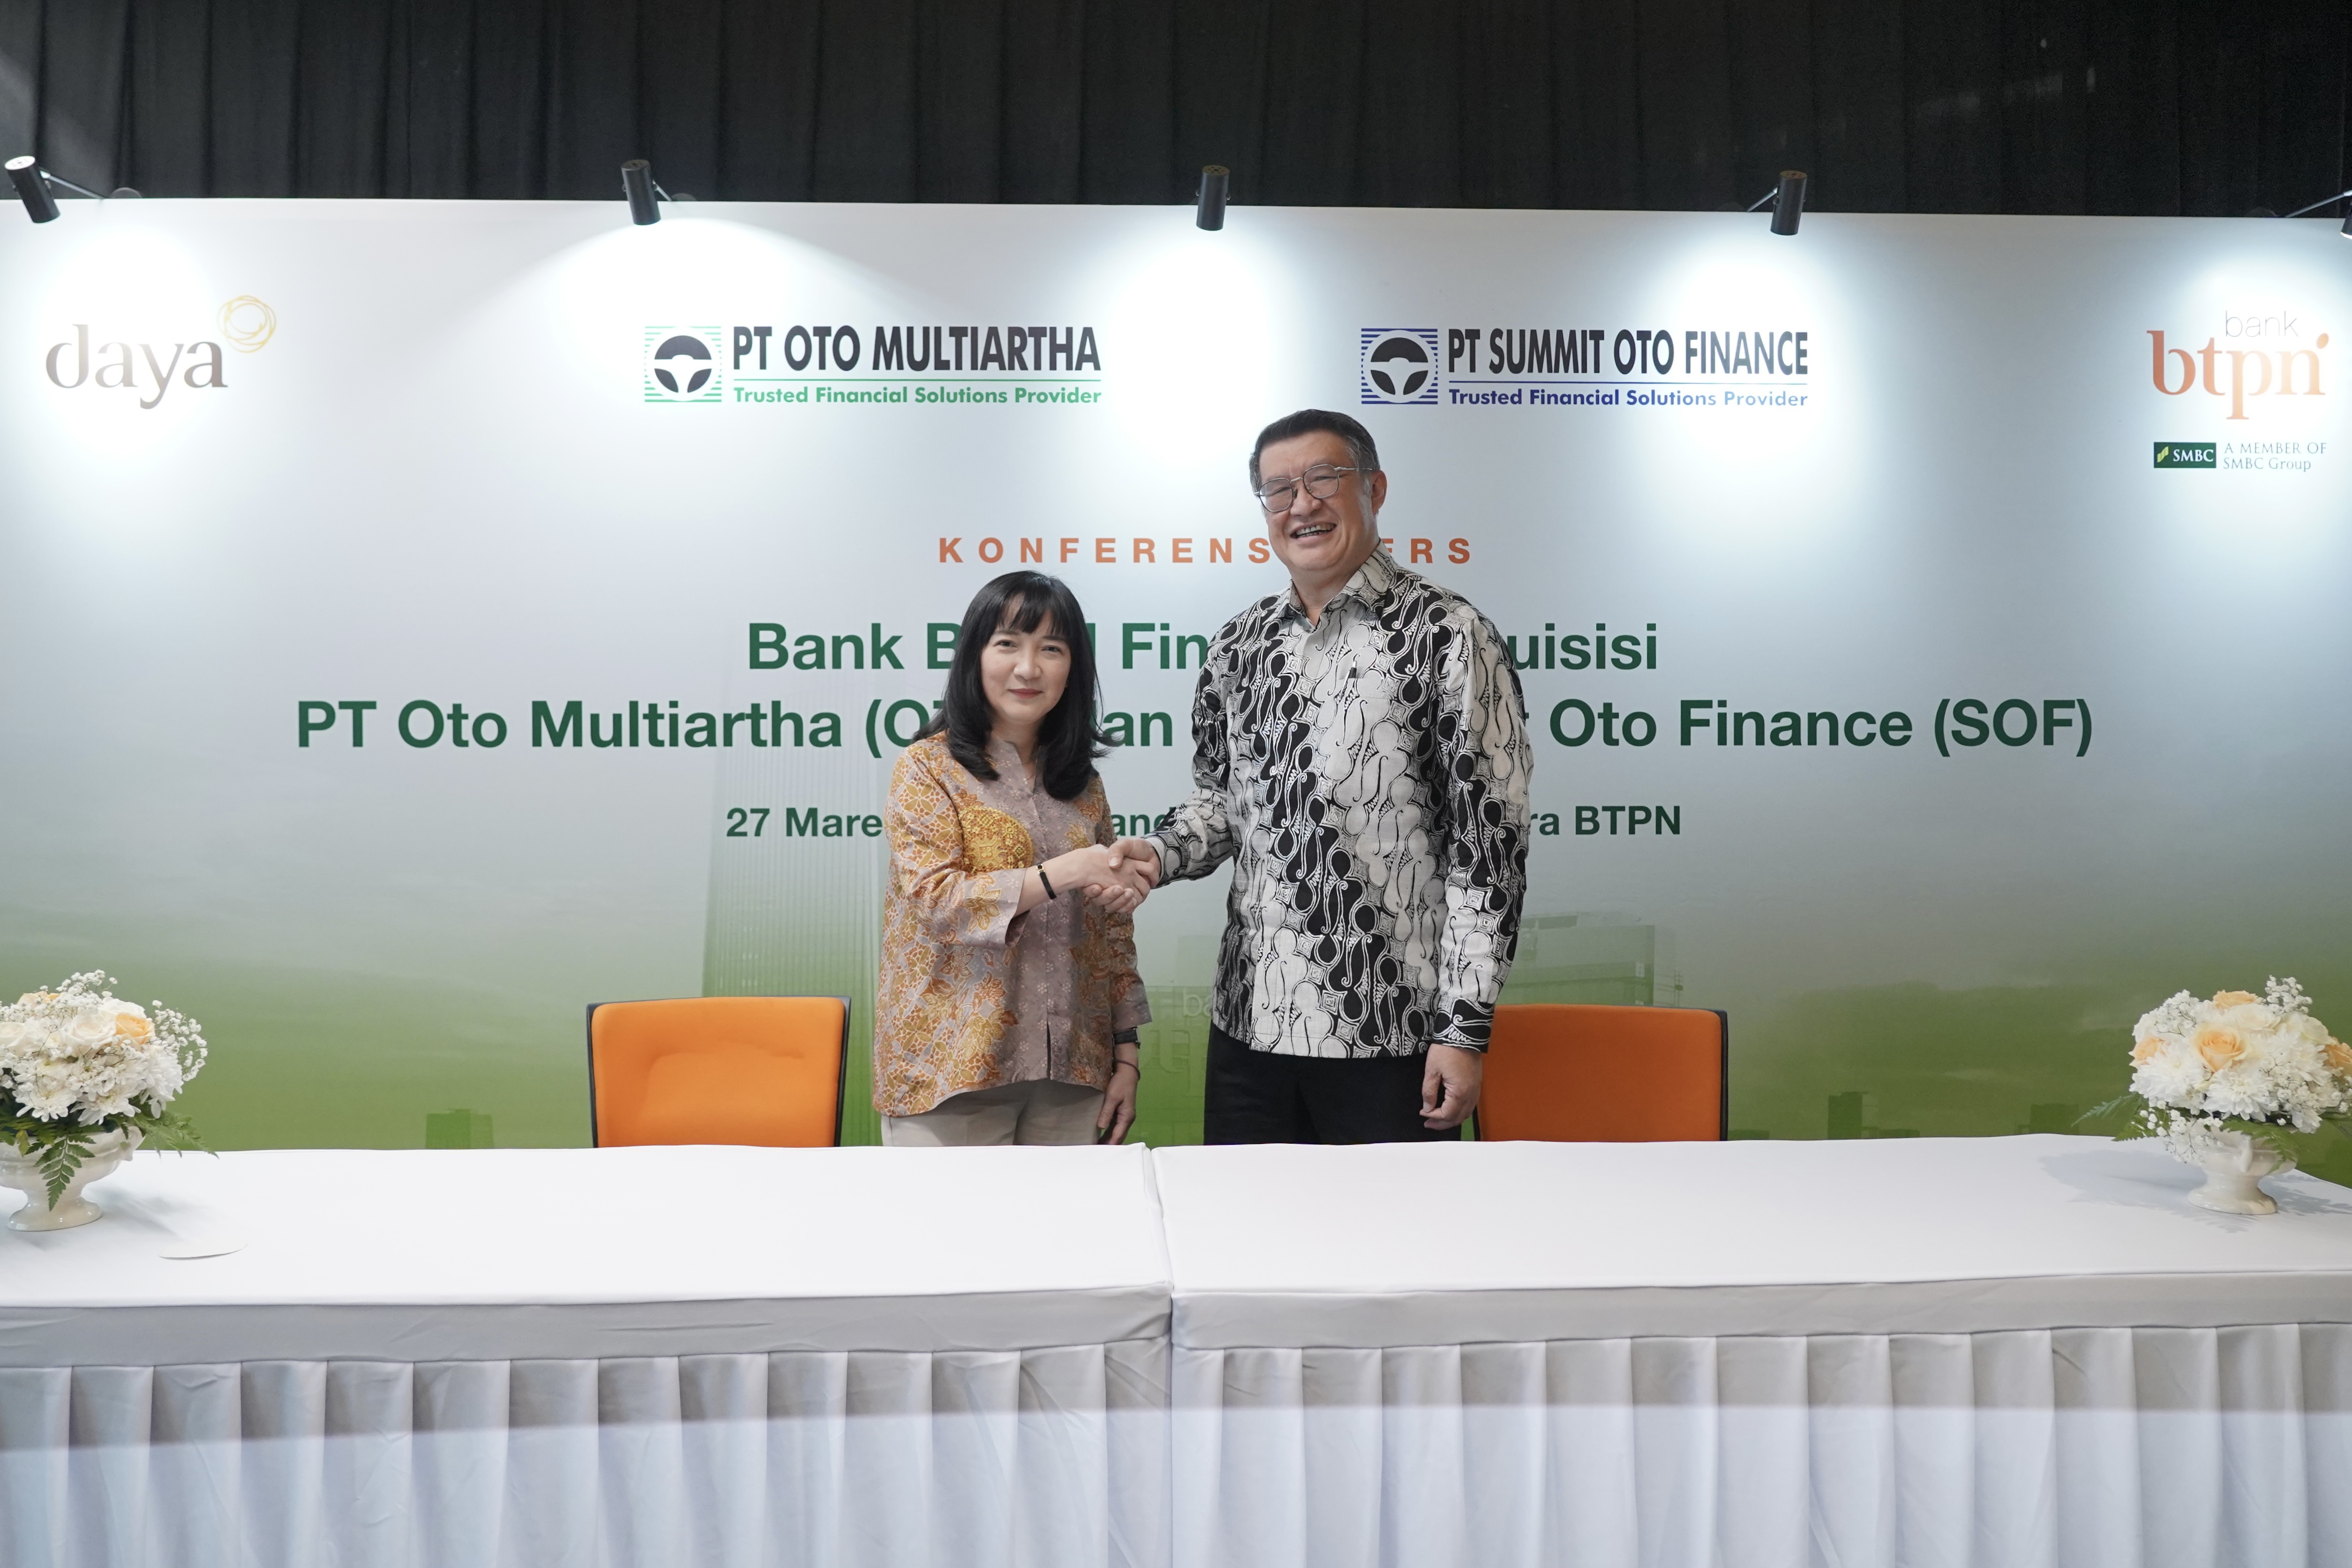 Bank BTPN Finalisasi Akuisisi terhadap PT Oto Multiartha dan PT Summit Oto Finance, Siap Layani Segmen Nasabah Lebih Luas